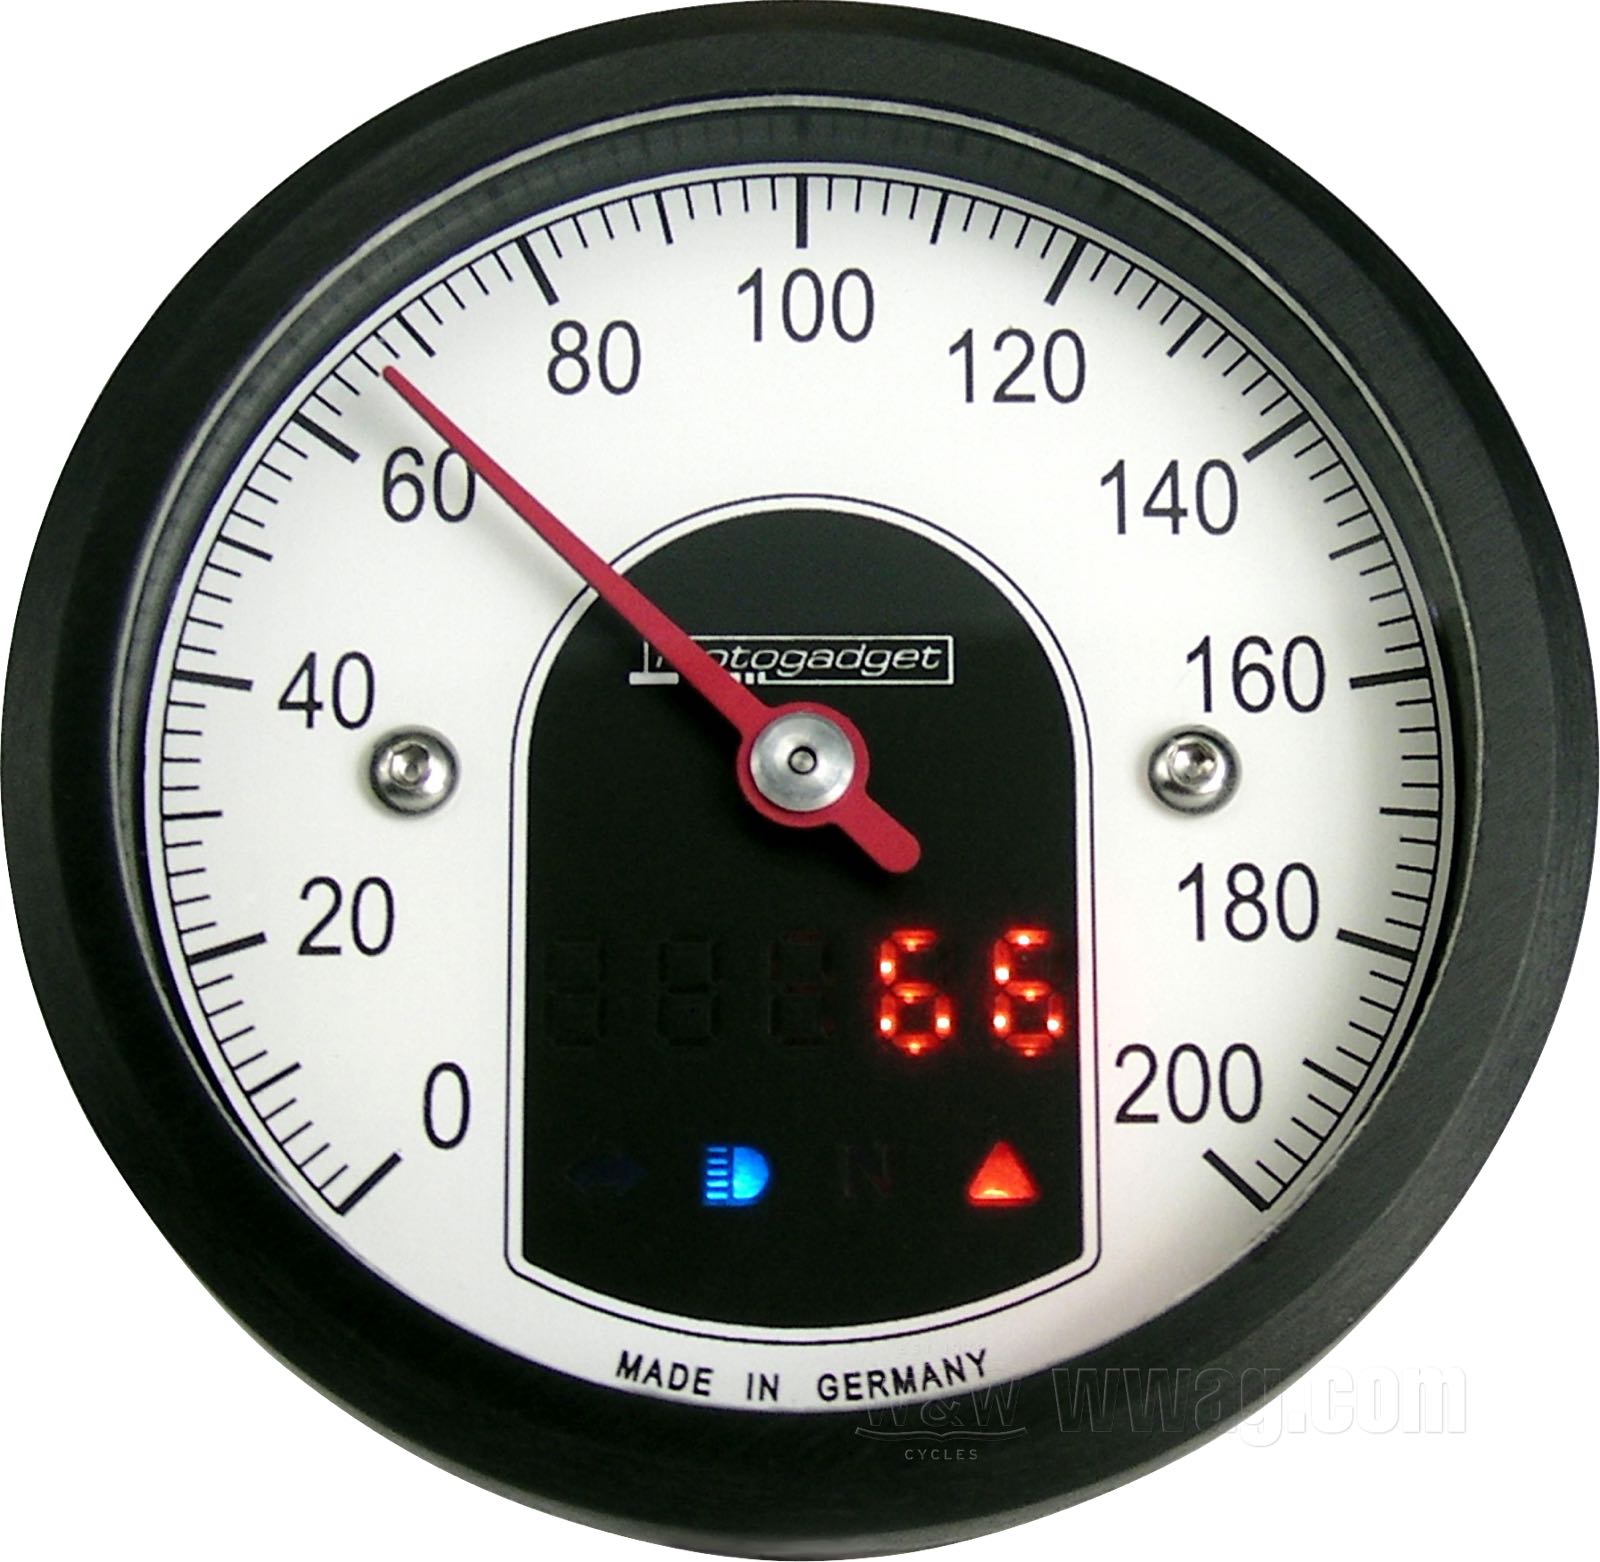 W&W Cycles - Mechanischer Tachometer »Basic« von MMB